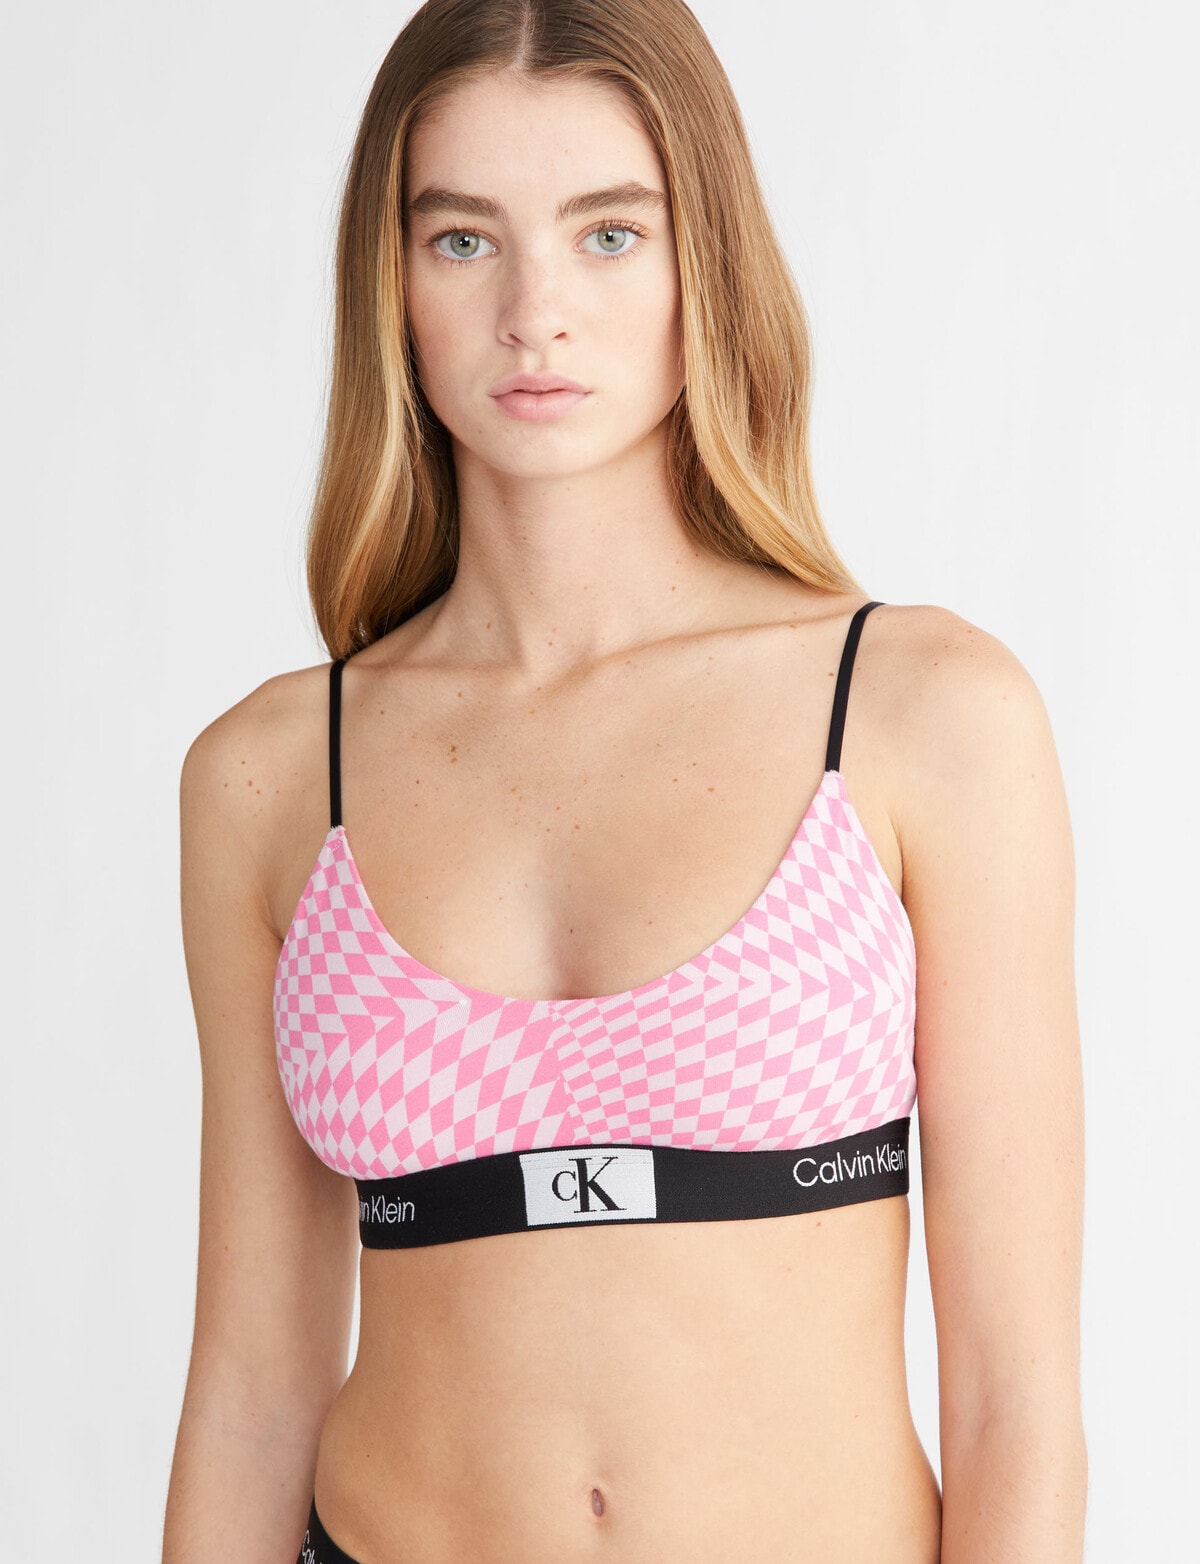 Calvin Klein Unpadded Bras for Women